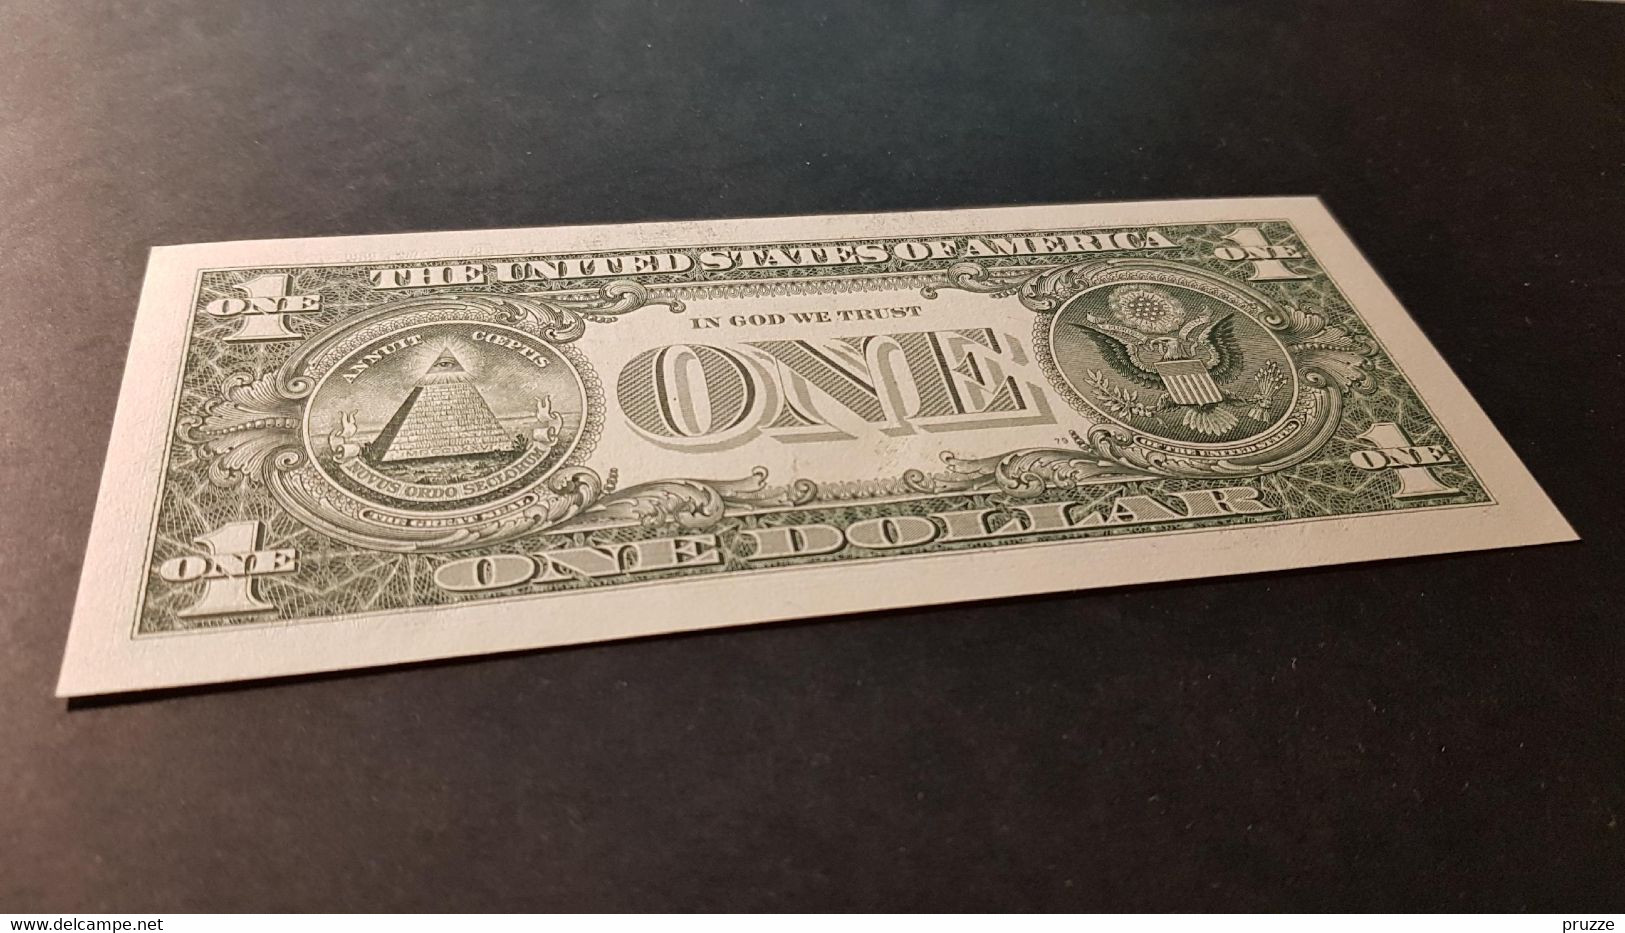 USA 2009, Federal Reserve Note, 1 $, One Dollar, B91865953G, B = New York, UNC - Billetes De La Reserva Federal (1928-...)